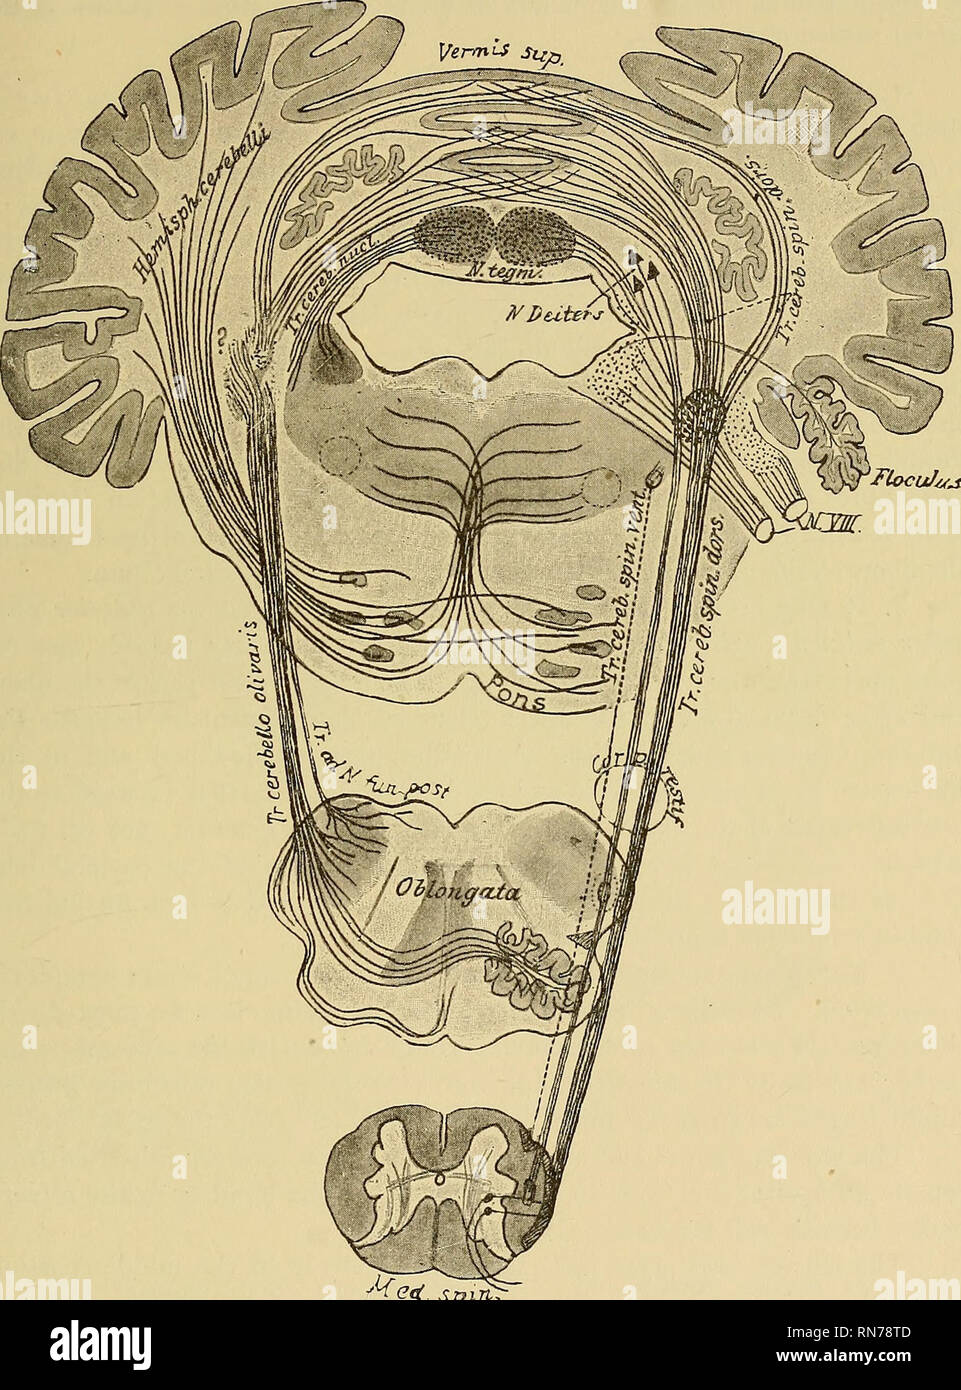 . Die Anatomie des zentralen Nervensystems des Menschen und der Wirbeltiere im Allgemeinen. Neuroanatomie; Zentrales Nervensystem. Die PONS und das KLEINHIRN. 335 Nach B. Beruhigens ist der Meinung, alle Stiel Fasern aus fast allen Teilen des Kleinhirns, Stiel, die vor allem zahlreiche Fasern aus einem bestimmten Teil.. spinnen. Schwein. 211.-Schema zeigt die Herkunft und die coiu e des fibei ist der Stiel des Kleinhirns. Bitte beachten Sie, dass diese Bilder aus gescannten Seite Bilder, die digital für die Lesbarkeit verbessert haben mögen - Färbung und extrahiert werden Stockfoto